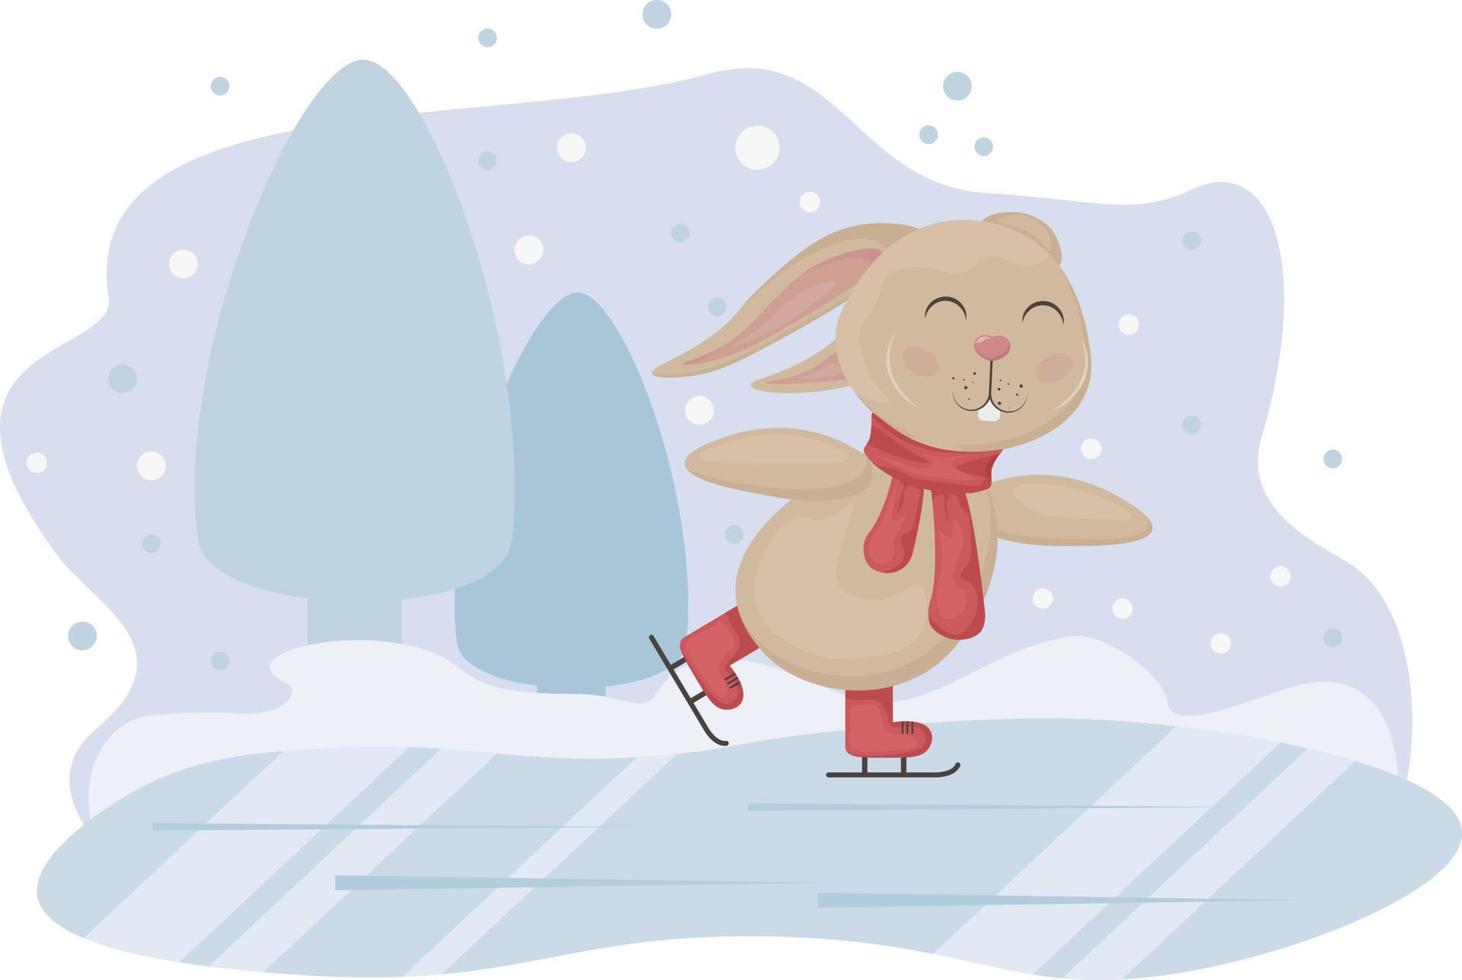 Conejo. invierno ilustración con el imagen de un linda Conejo Patinaje. Conejo en hielo. niños s Navidad ilustración. vector